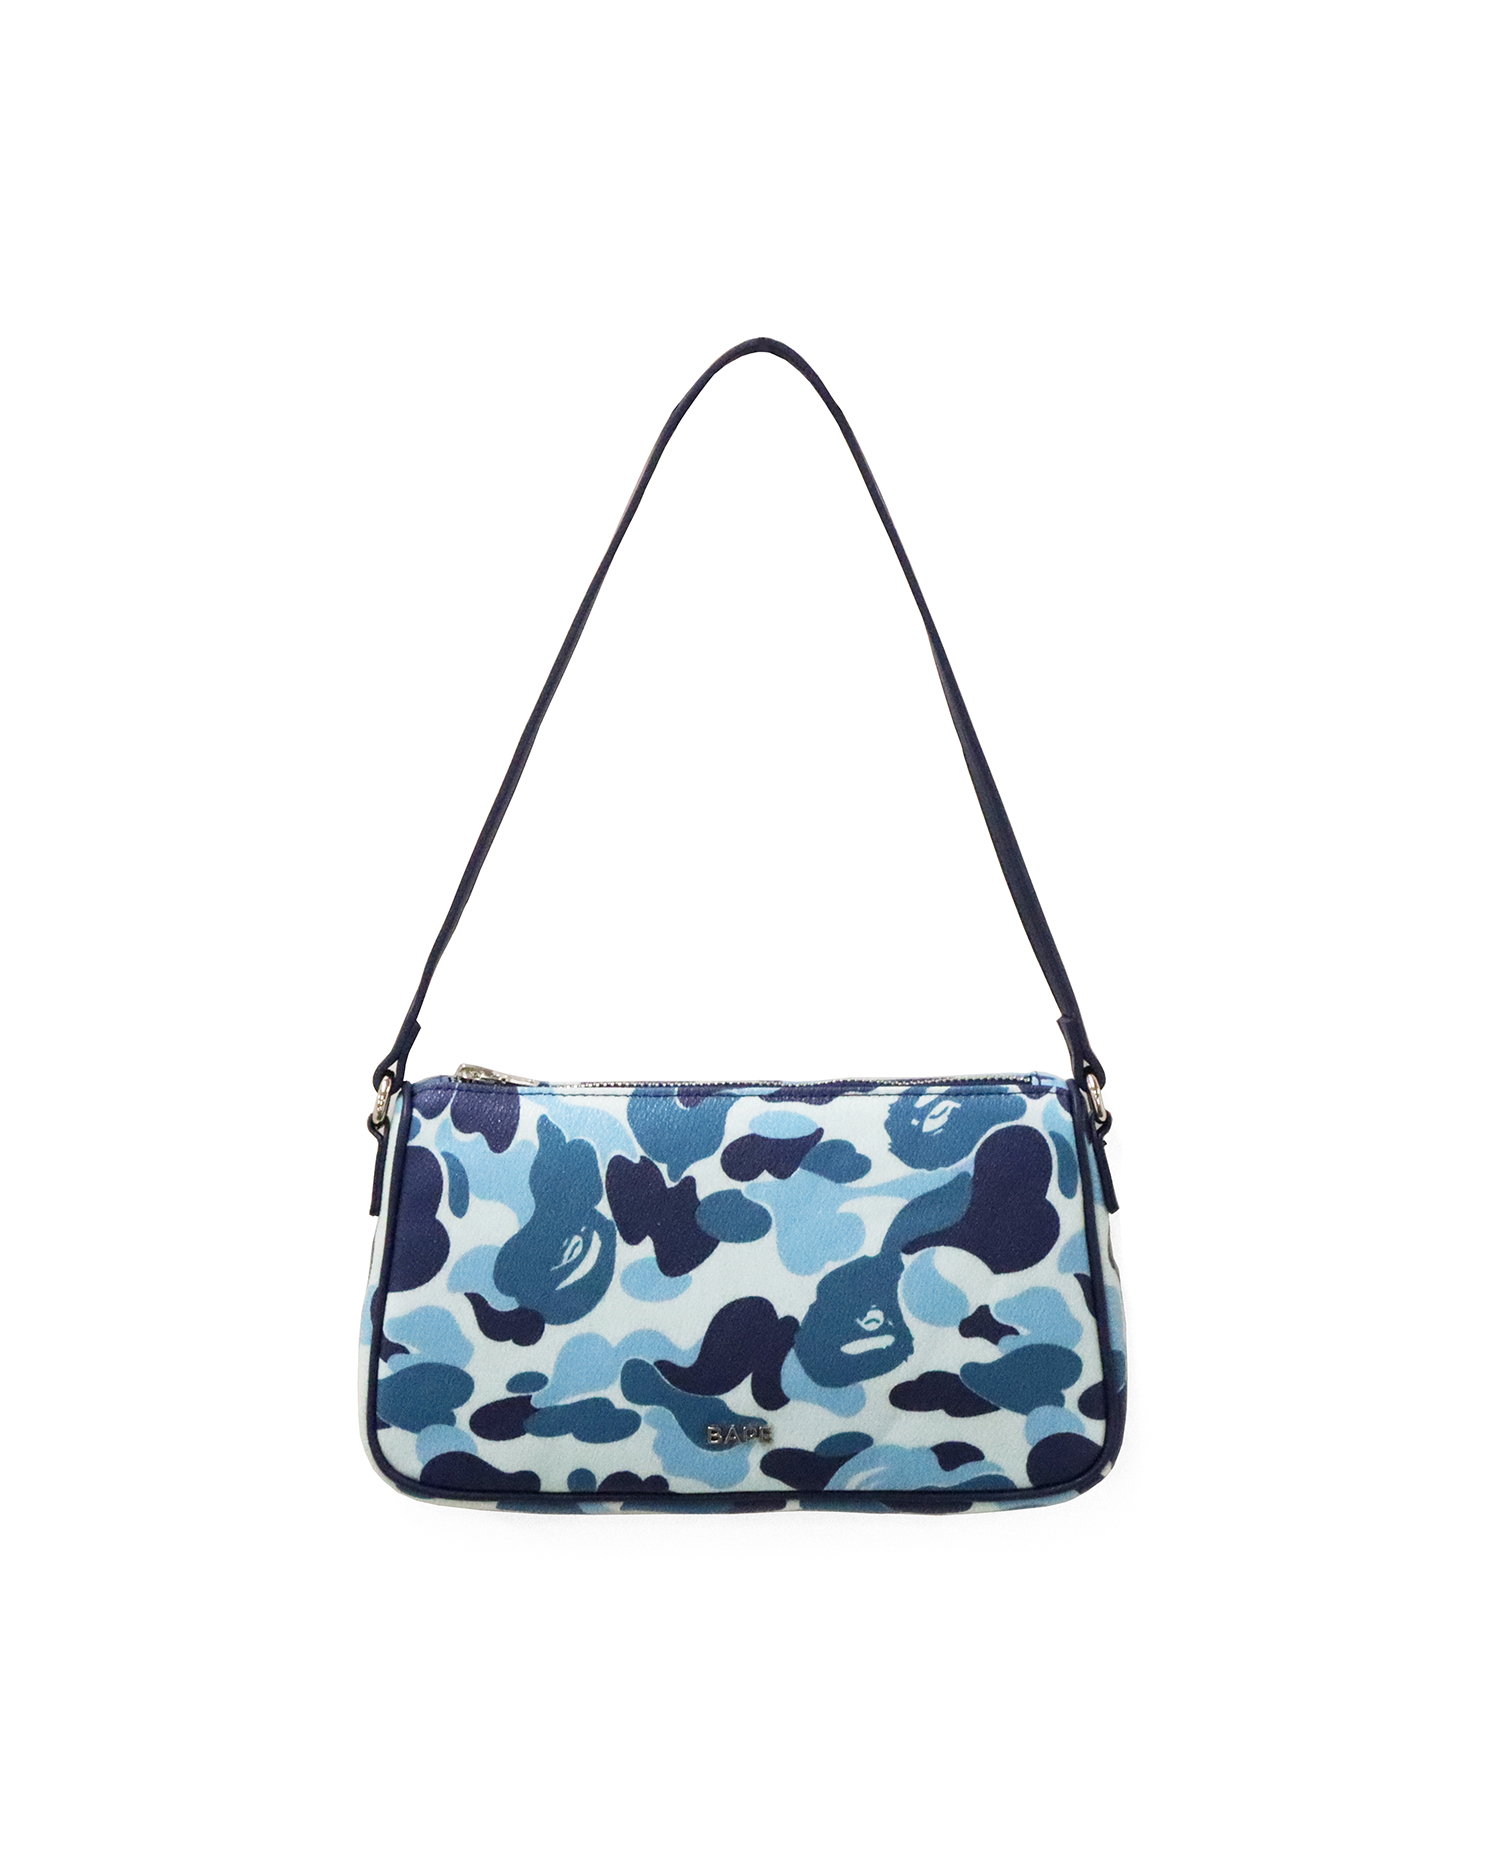 NEW Bape Side Bag - Blue Camo